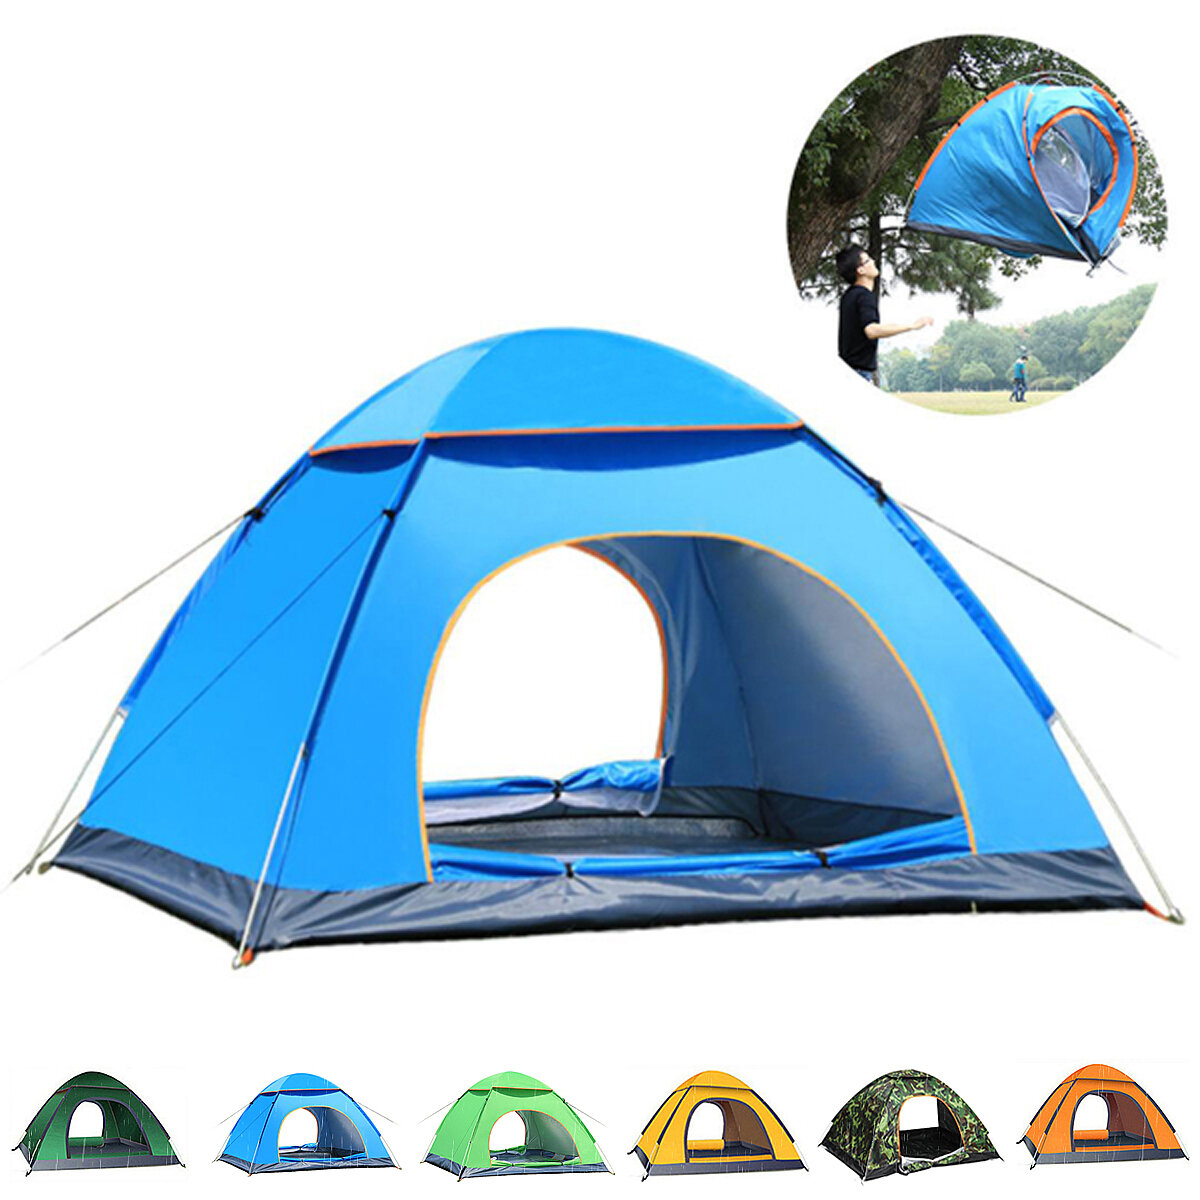 Camping tent 2. Палатка naturehike автоматическая, на 3 человека, синяя. Навес для кемпинга. Палатка стекловолокно автоматическая. Кемпинговая палатка премиум класса.